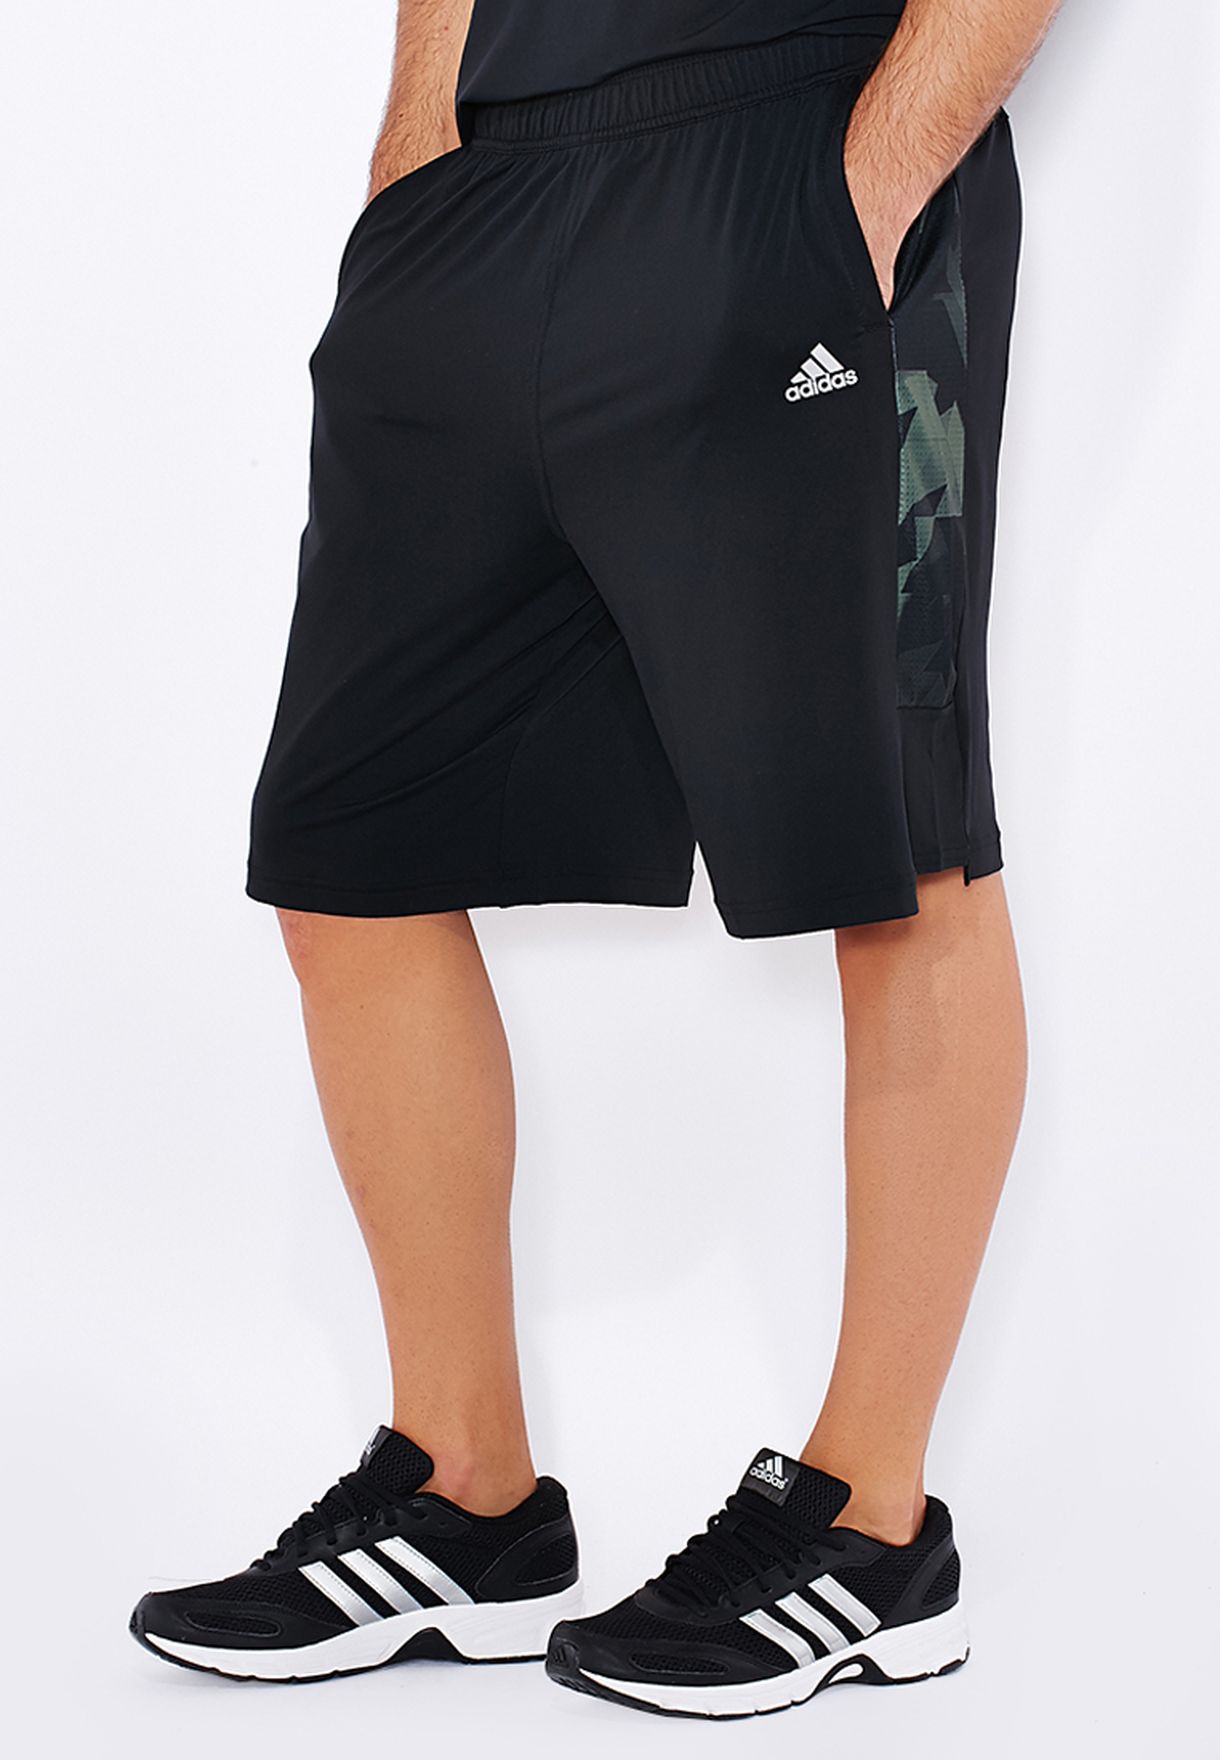 adidas cool 365 shorts